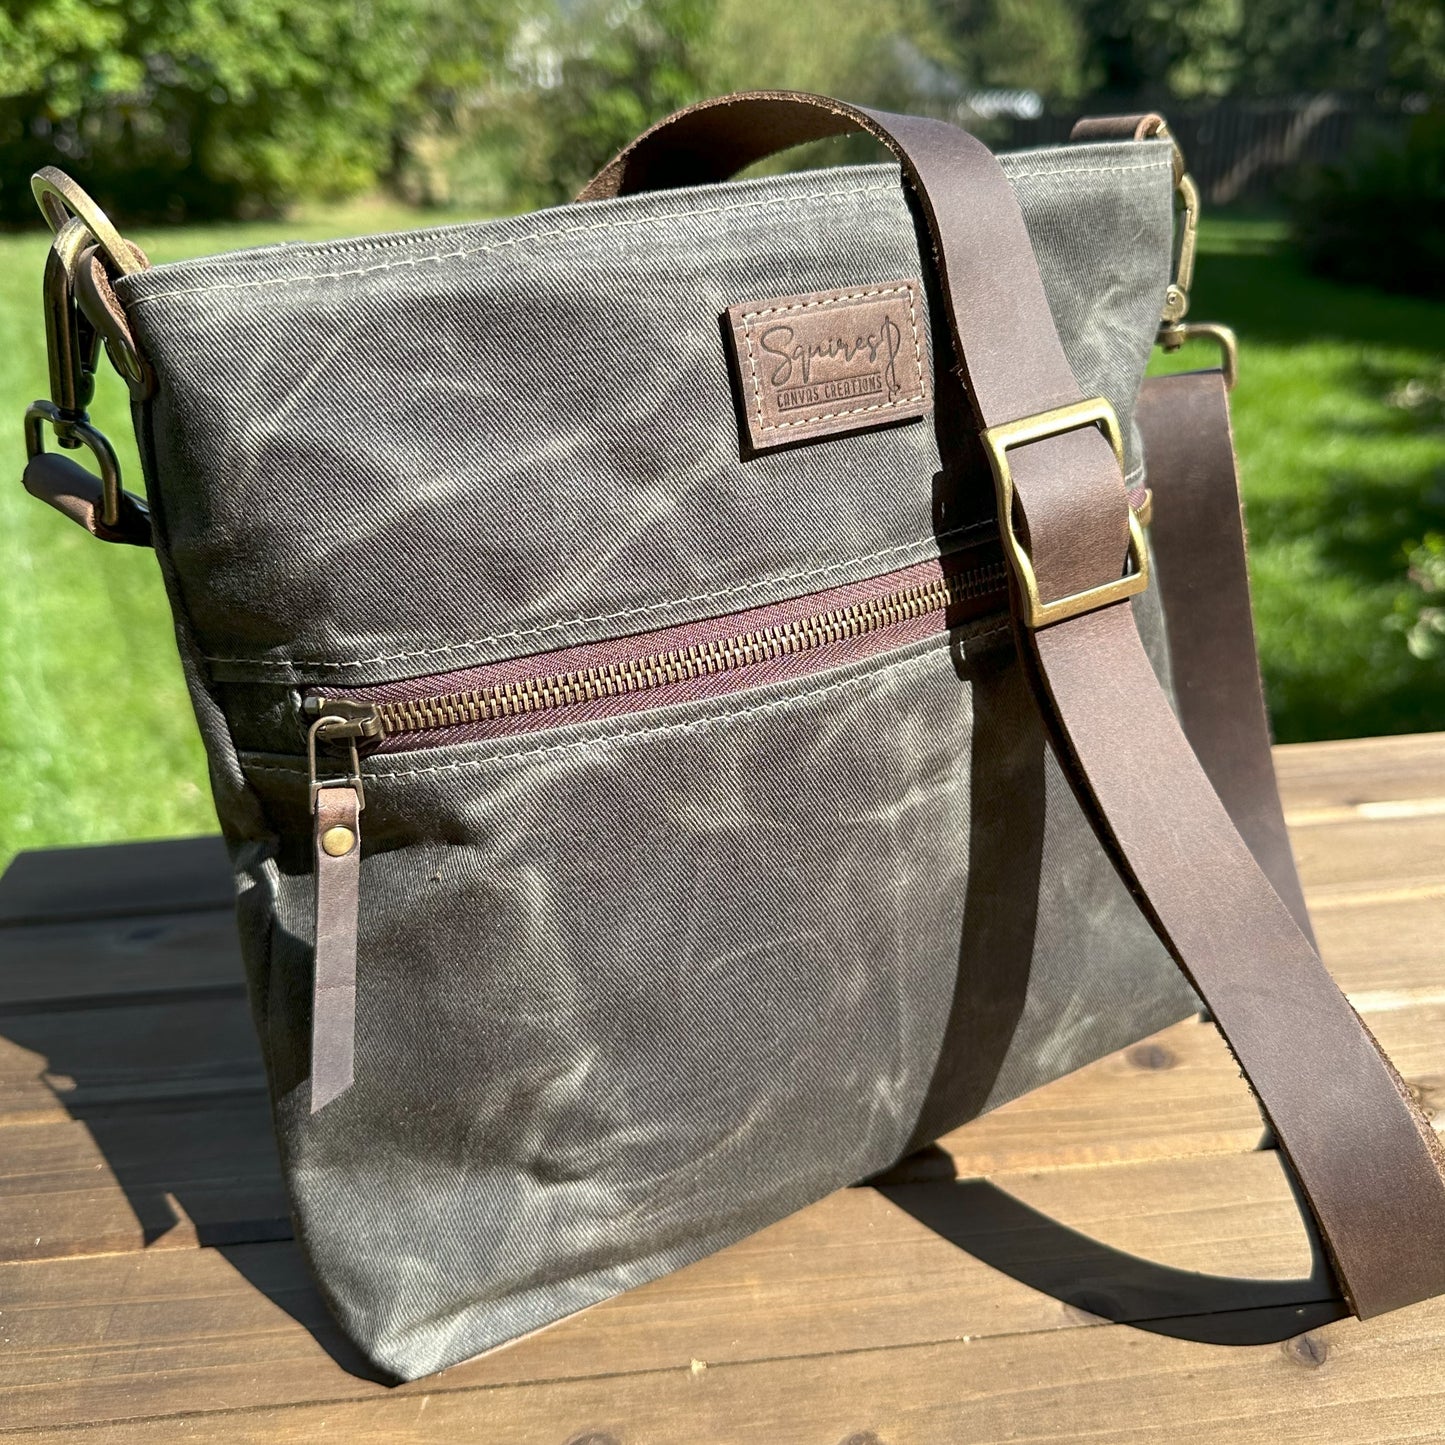 Made to Order: Bayside Hobo Bag